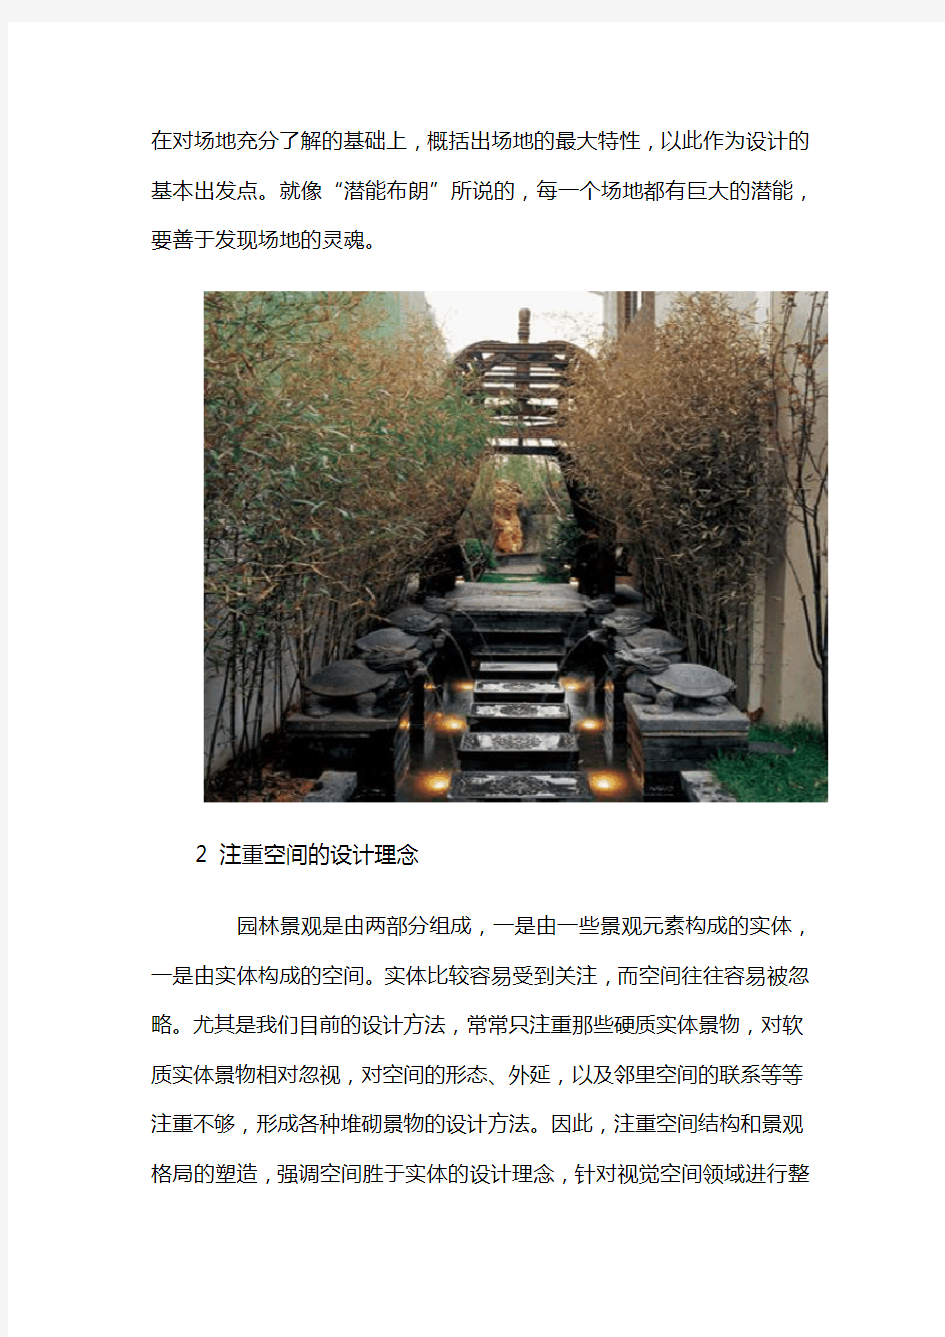 上海园林景观设计理念